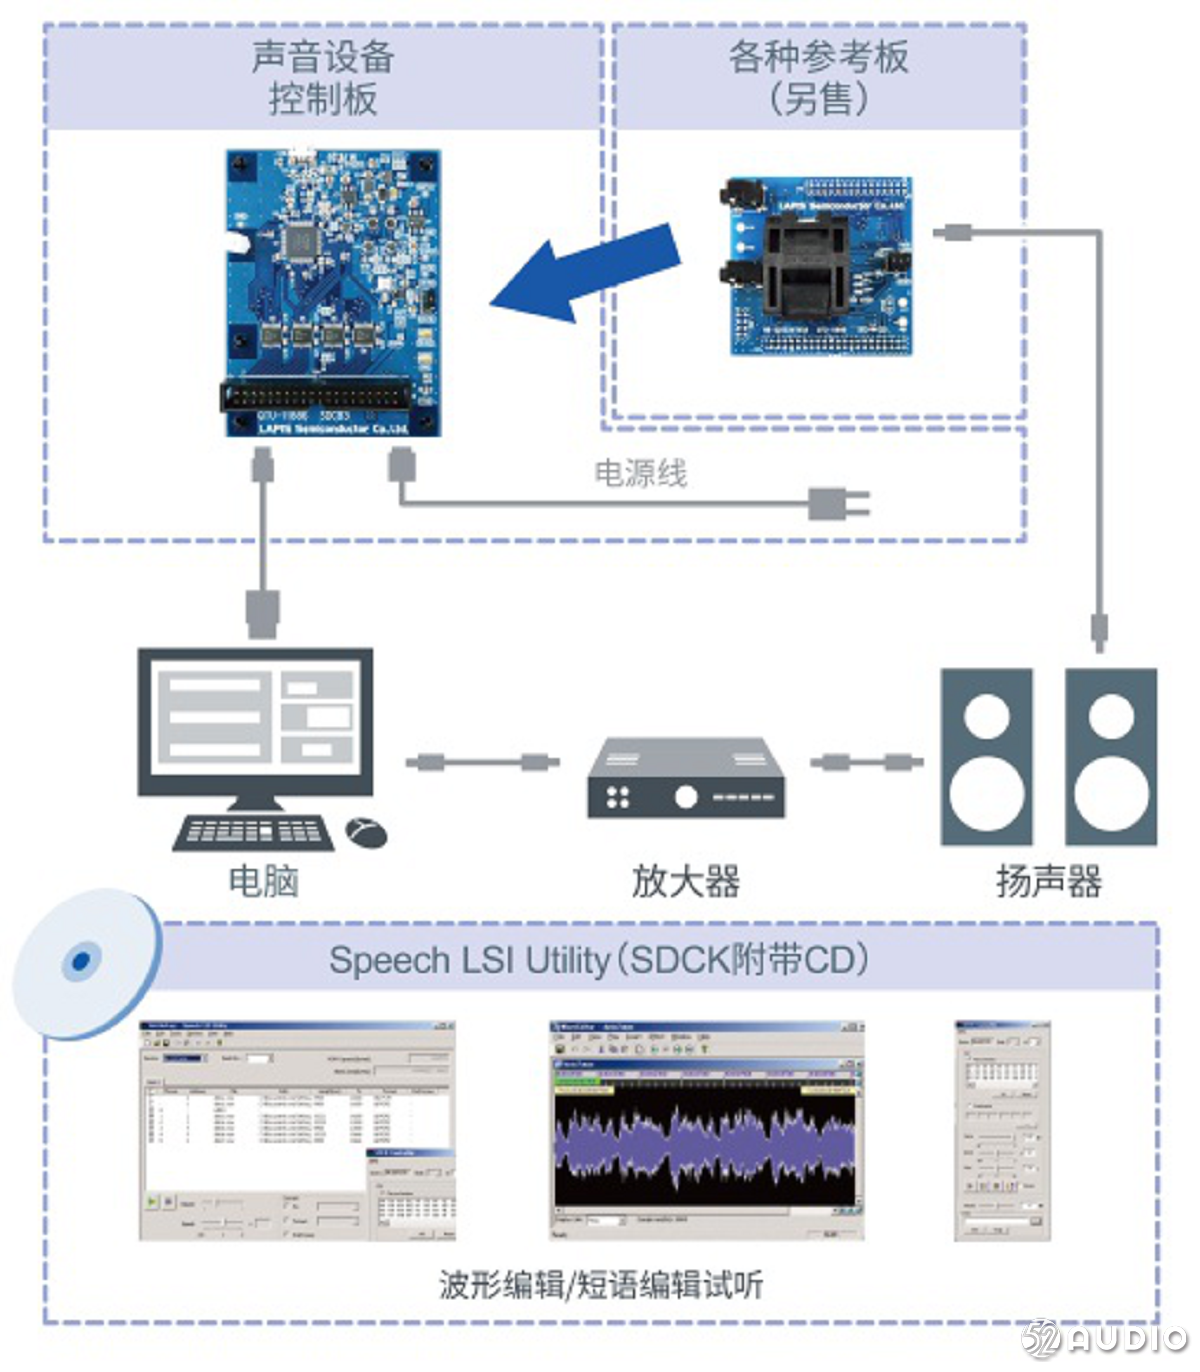 蓝碧石半导体推出LSI “ML2253x系列”车载语音系统，适用于ADAS和AVAS语音输出系统-我爱音频网